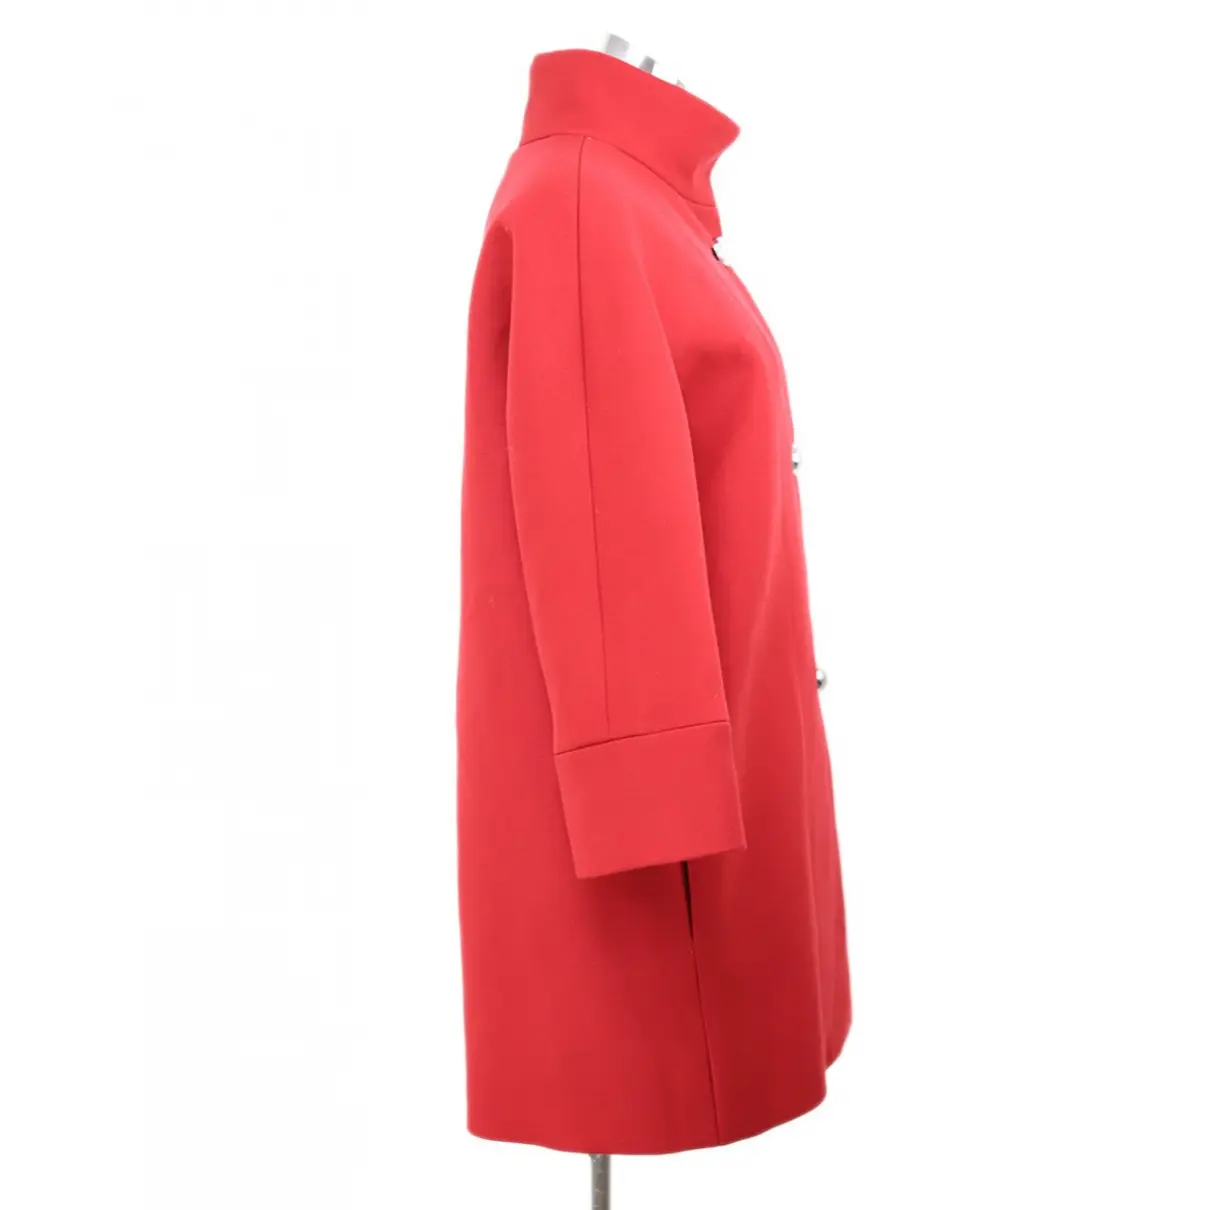 Buy Balenciaga Wool coat online